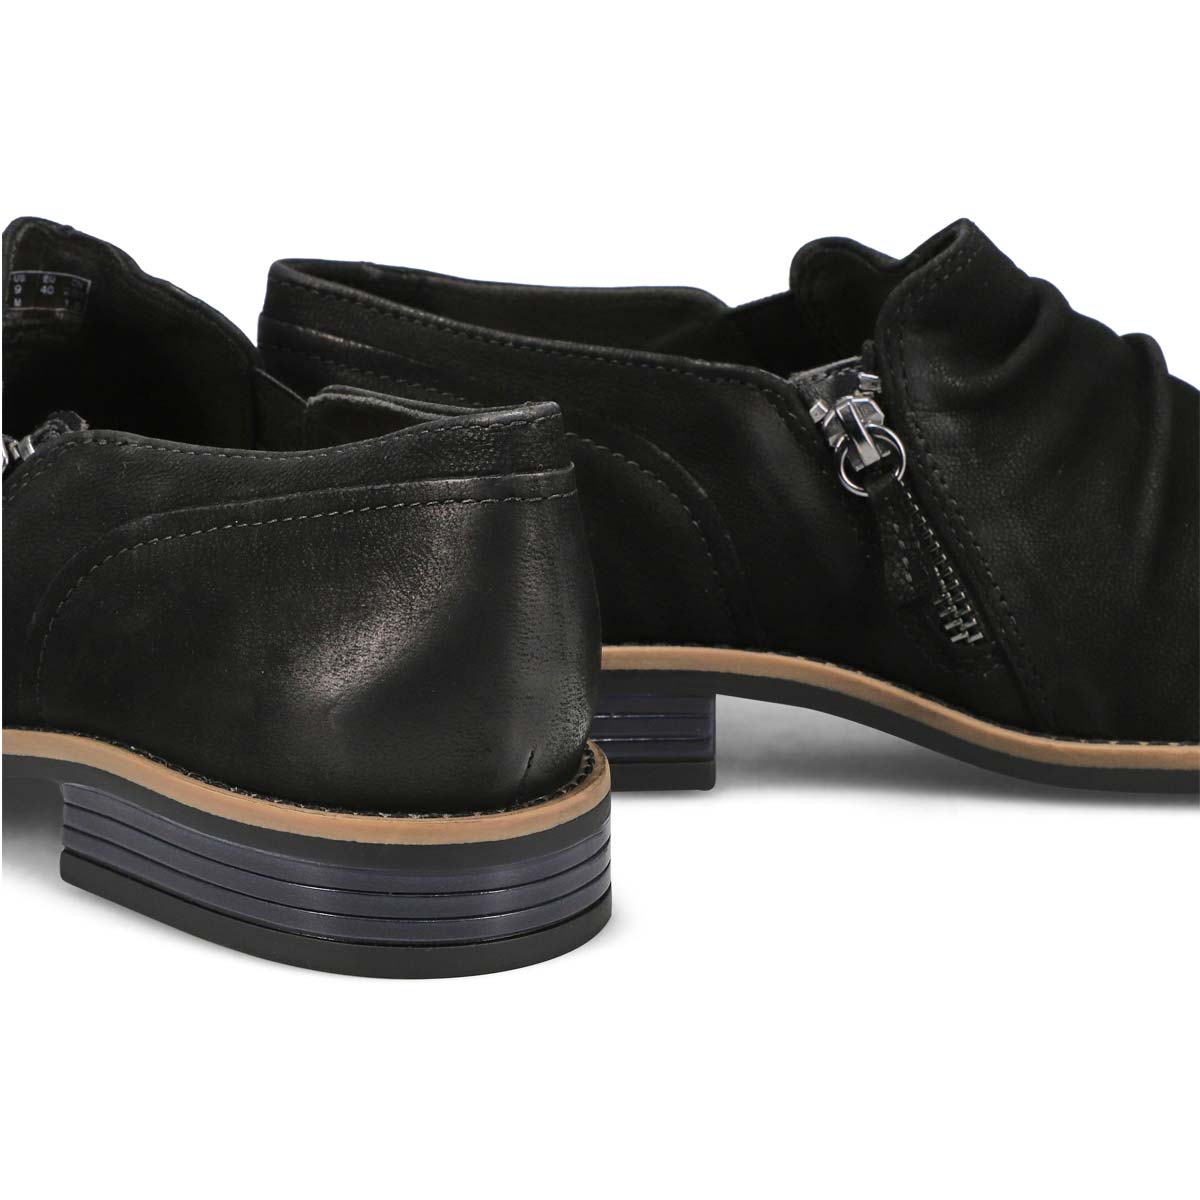 Women's Camzin Pace Casual Shoe - Black